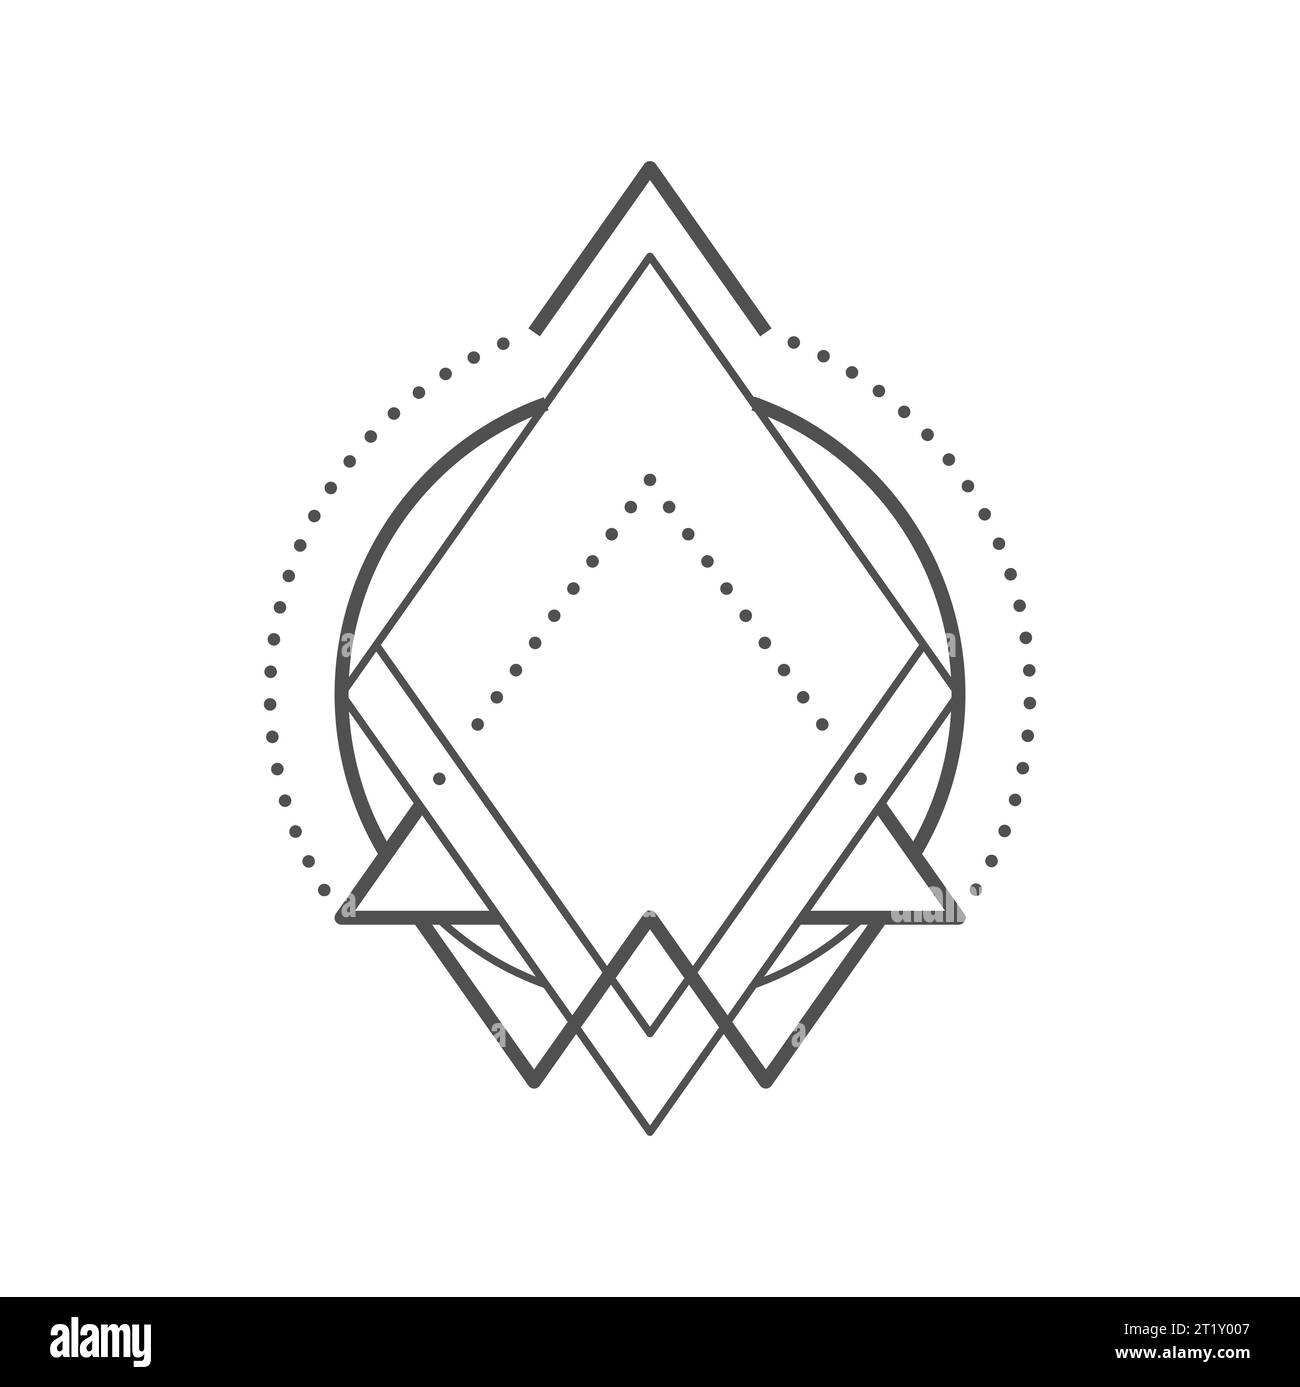 Geometrisches Boho-Tattoo. Magisches oder okkultes Symbol, Hipster-Boho-Dreieck minimales Vektorzeichen oder abstrakte Linienart-Tattoo mit heiliger Geometrie. Okkulte Alchemie, mystisches Umrissschmuck Stock Vektor